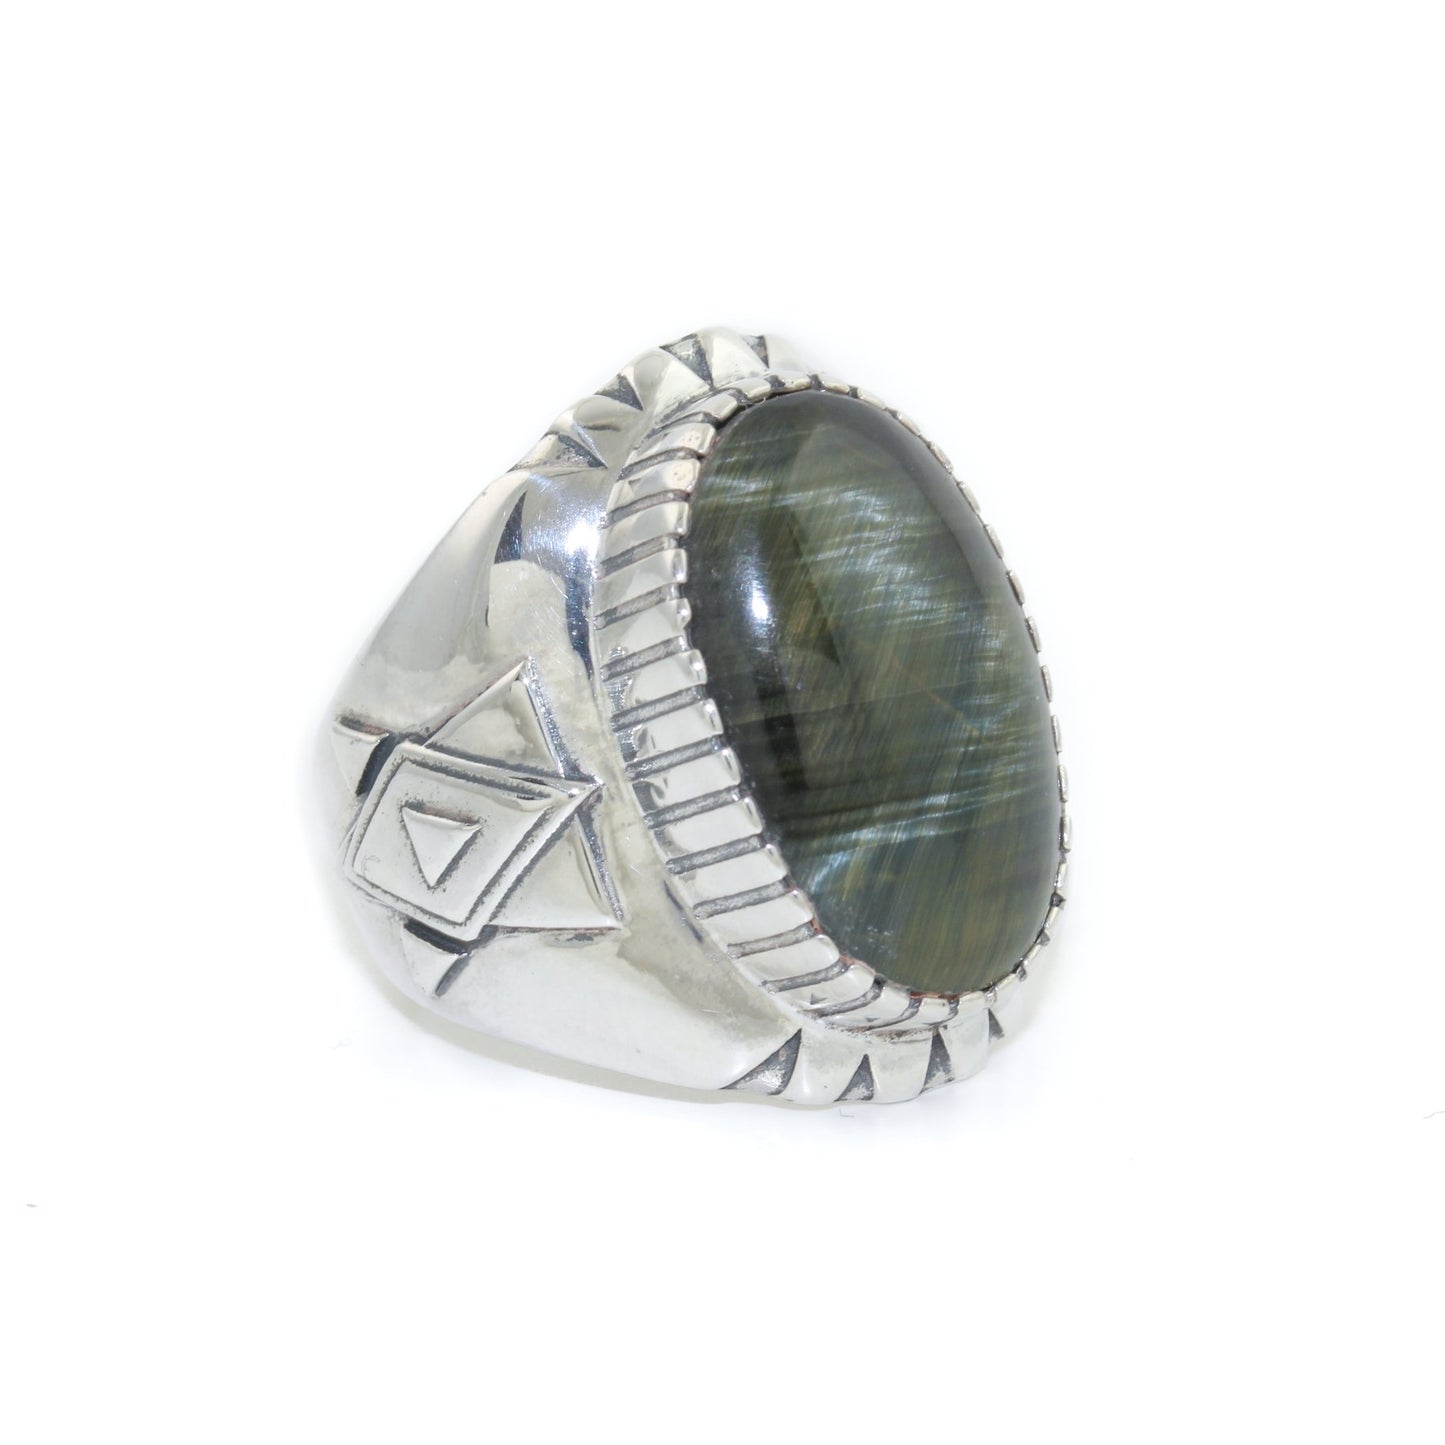 Geometric "Alpha" Ring x Blue Tiger's Eye by Kingdom - Kingdom Jewelry